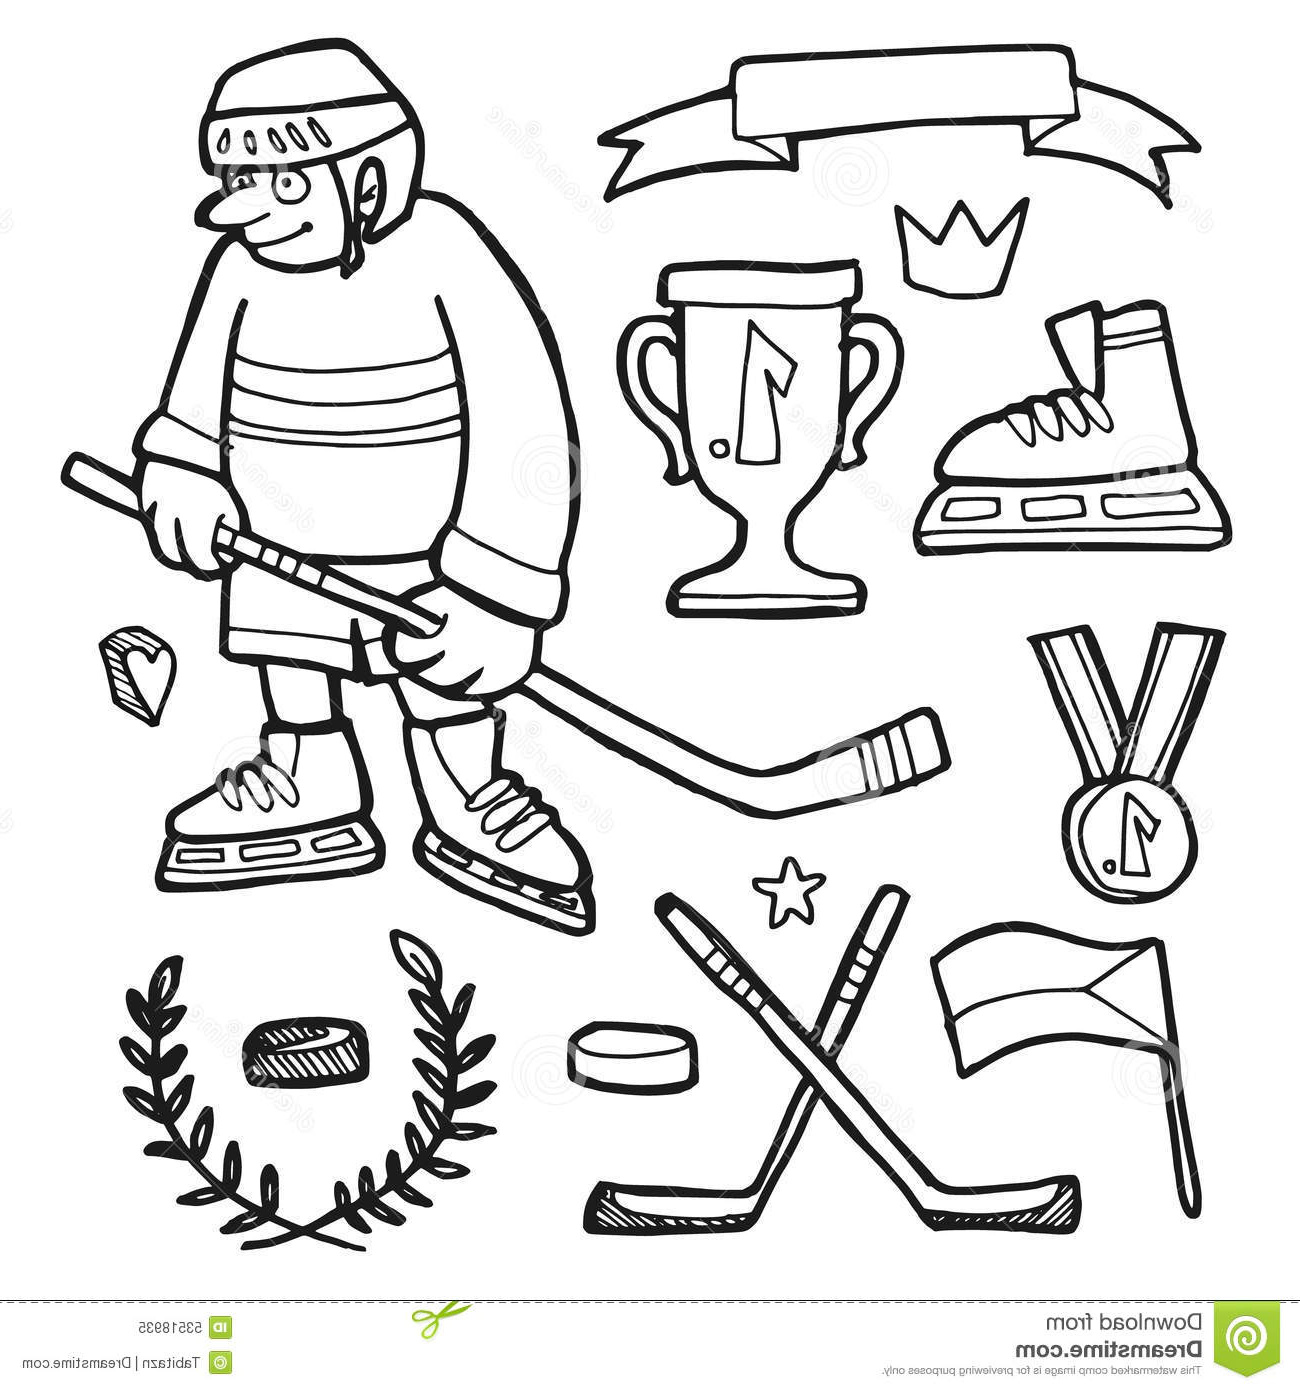 stock illustration set ic hand drawn ice hockey doodle sketches elements image